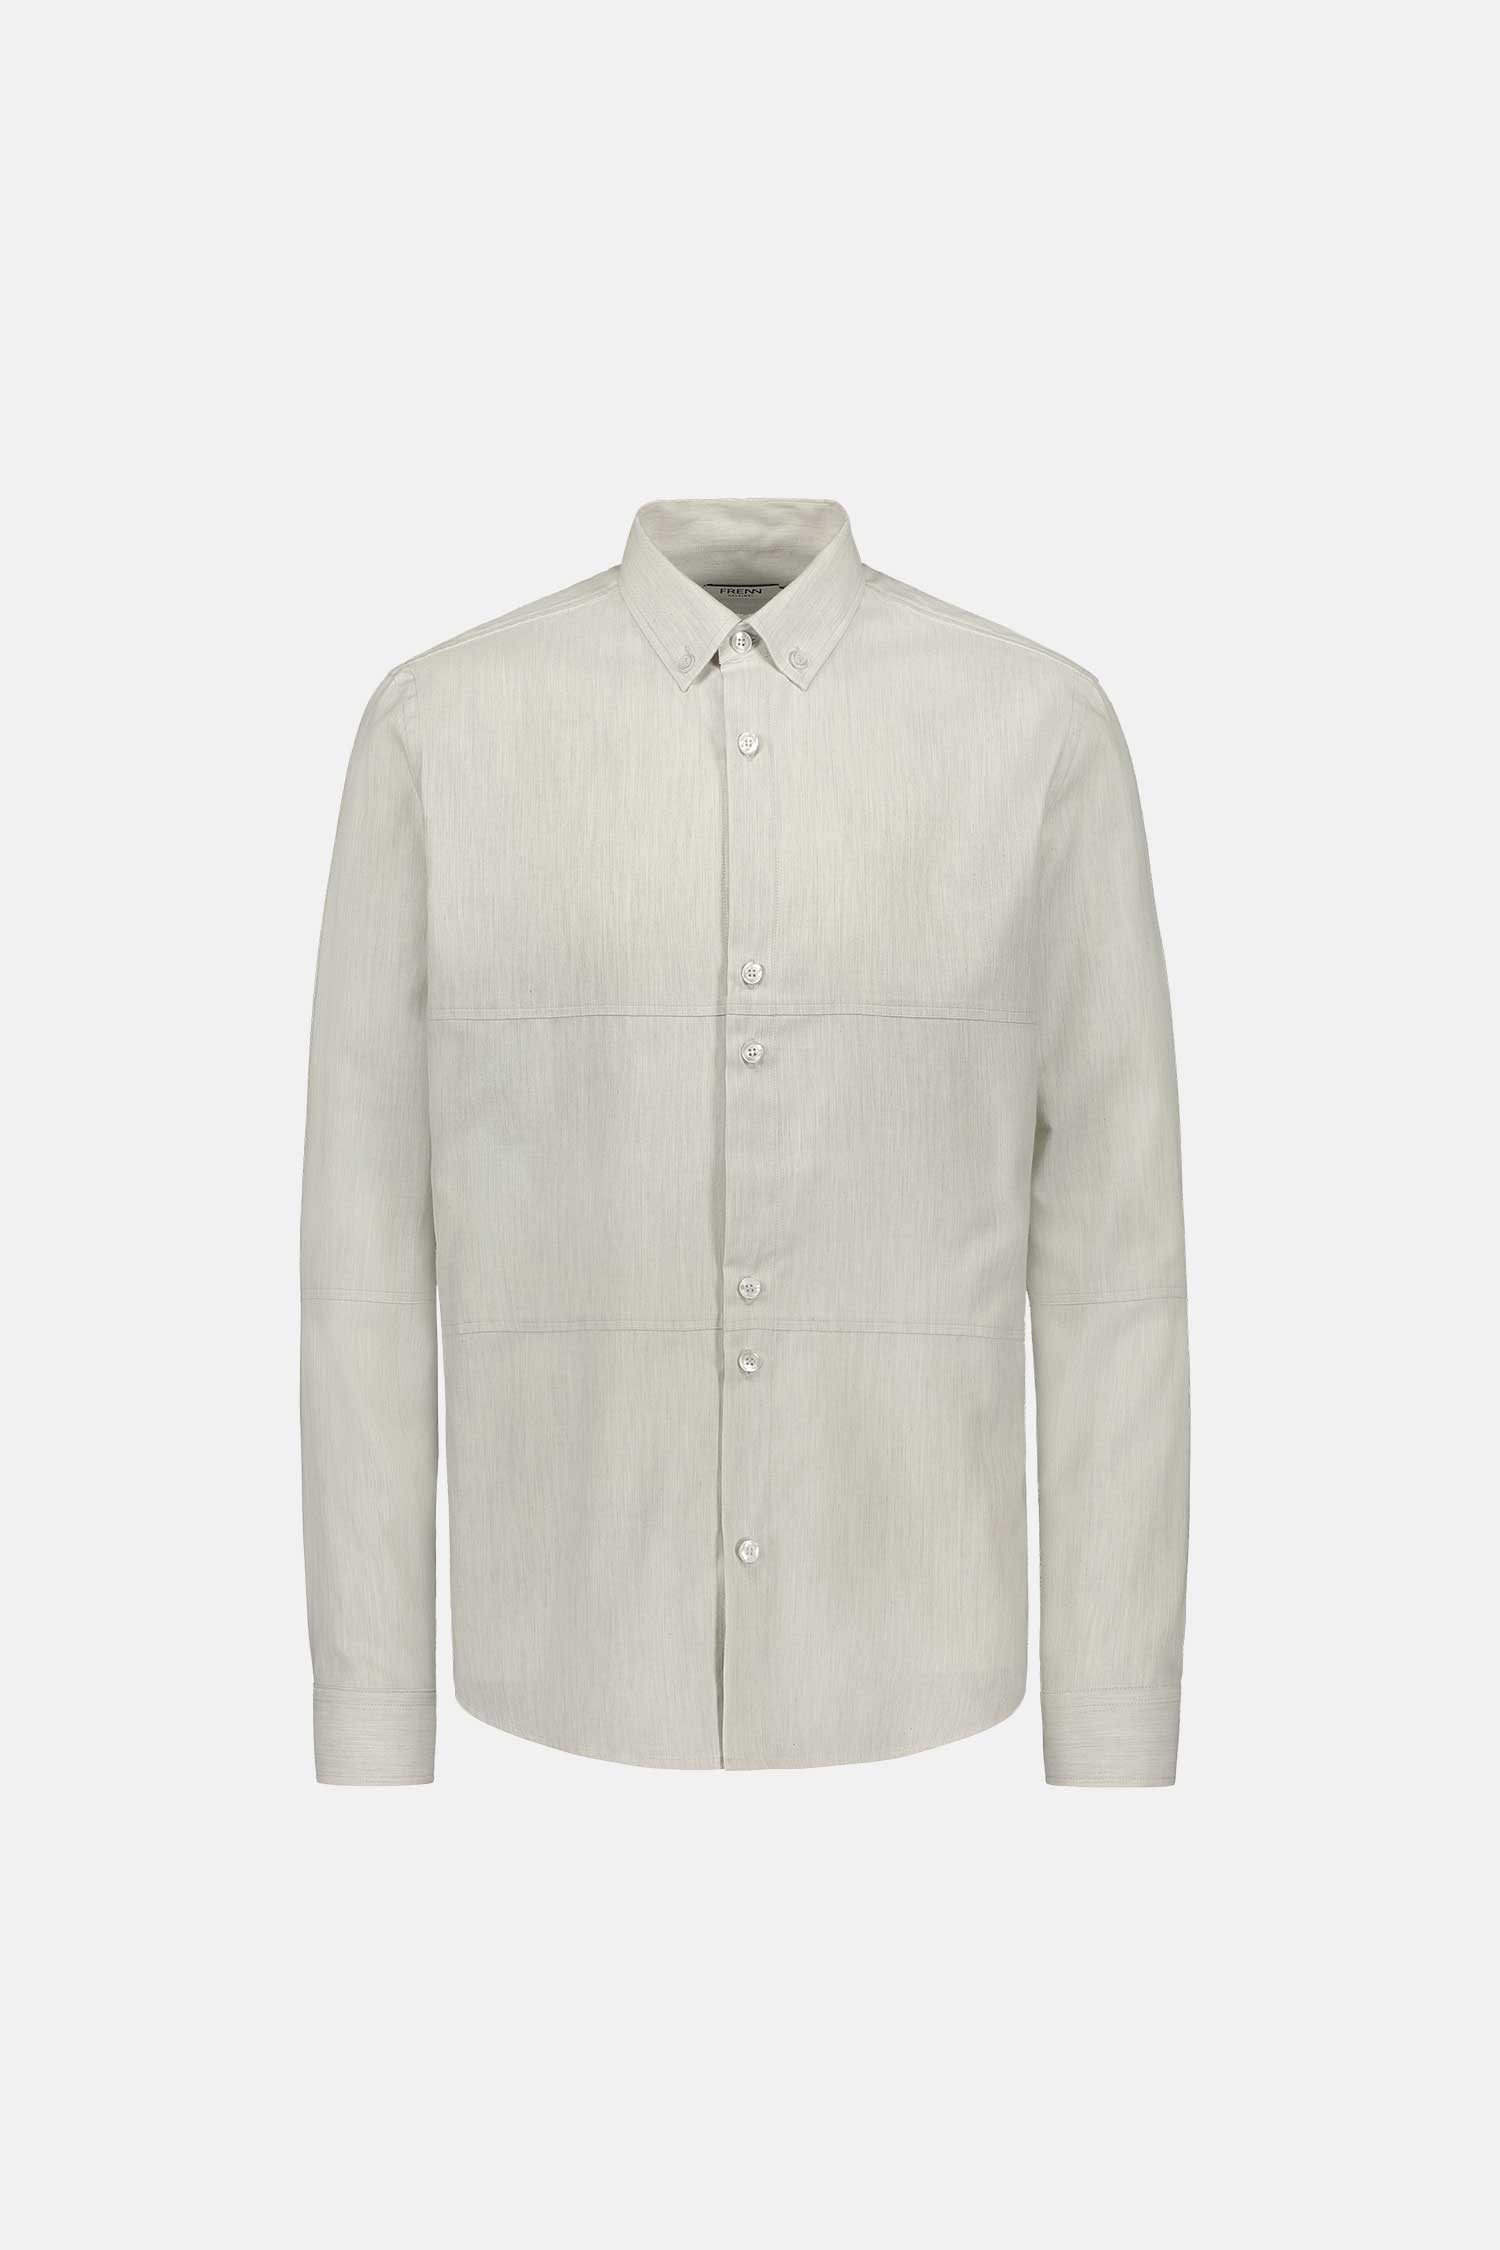 FRENN Alvar cotton shirt grey